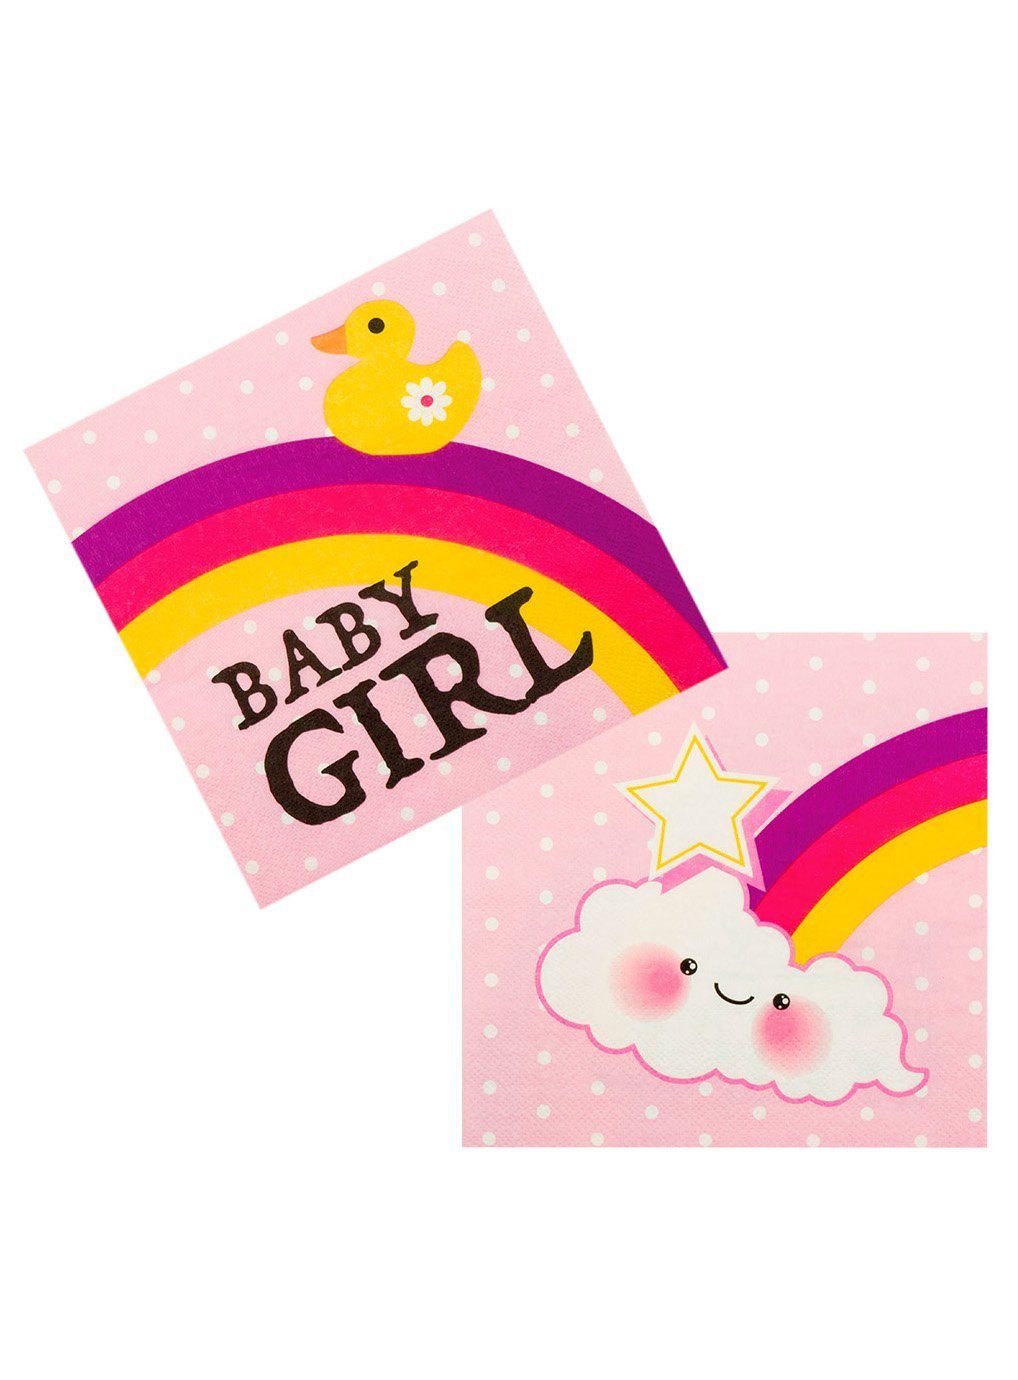 Girl Baby oder Geburt, Einweggeschirr-Set Papier, Partygeschirr für Pullerparty! Boland Servietten, Babygeburtstag 12